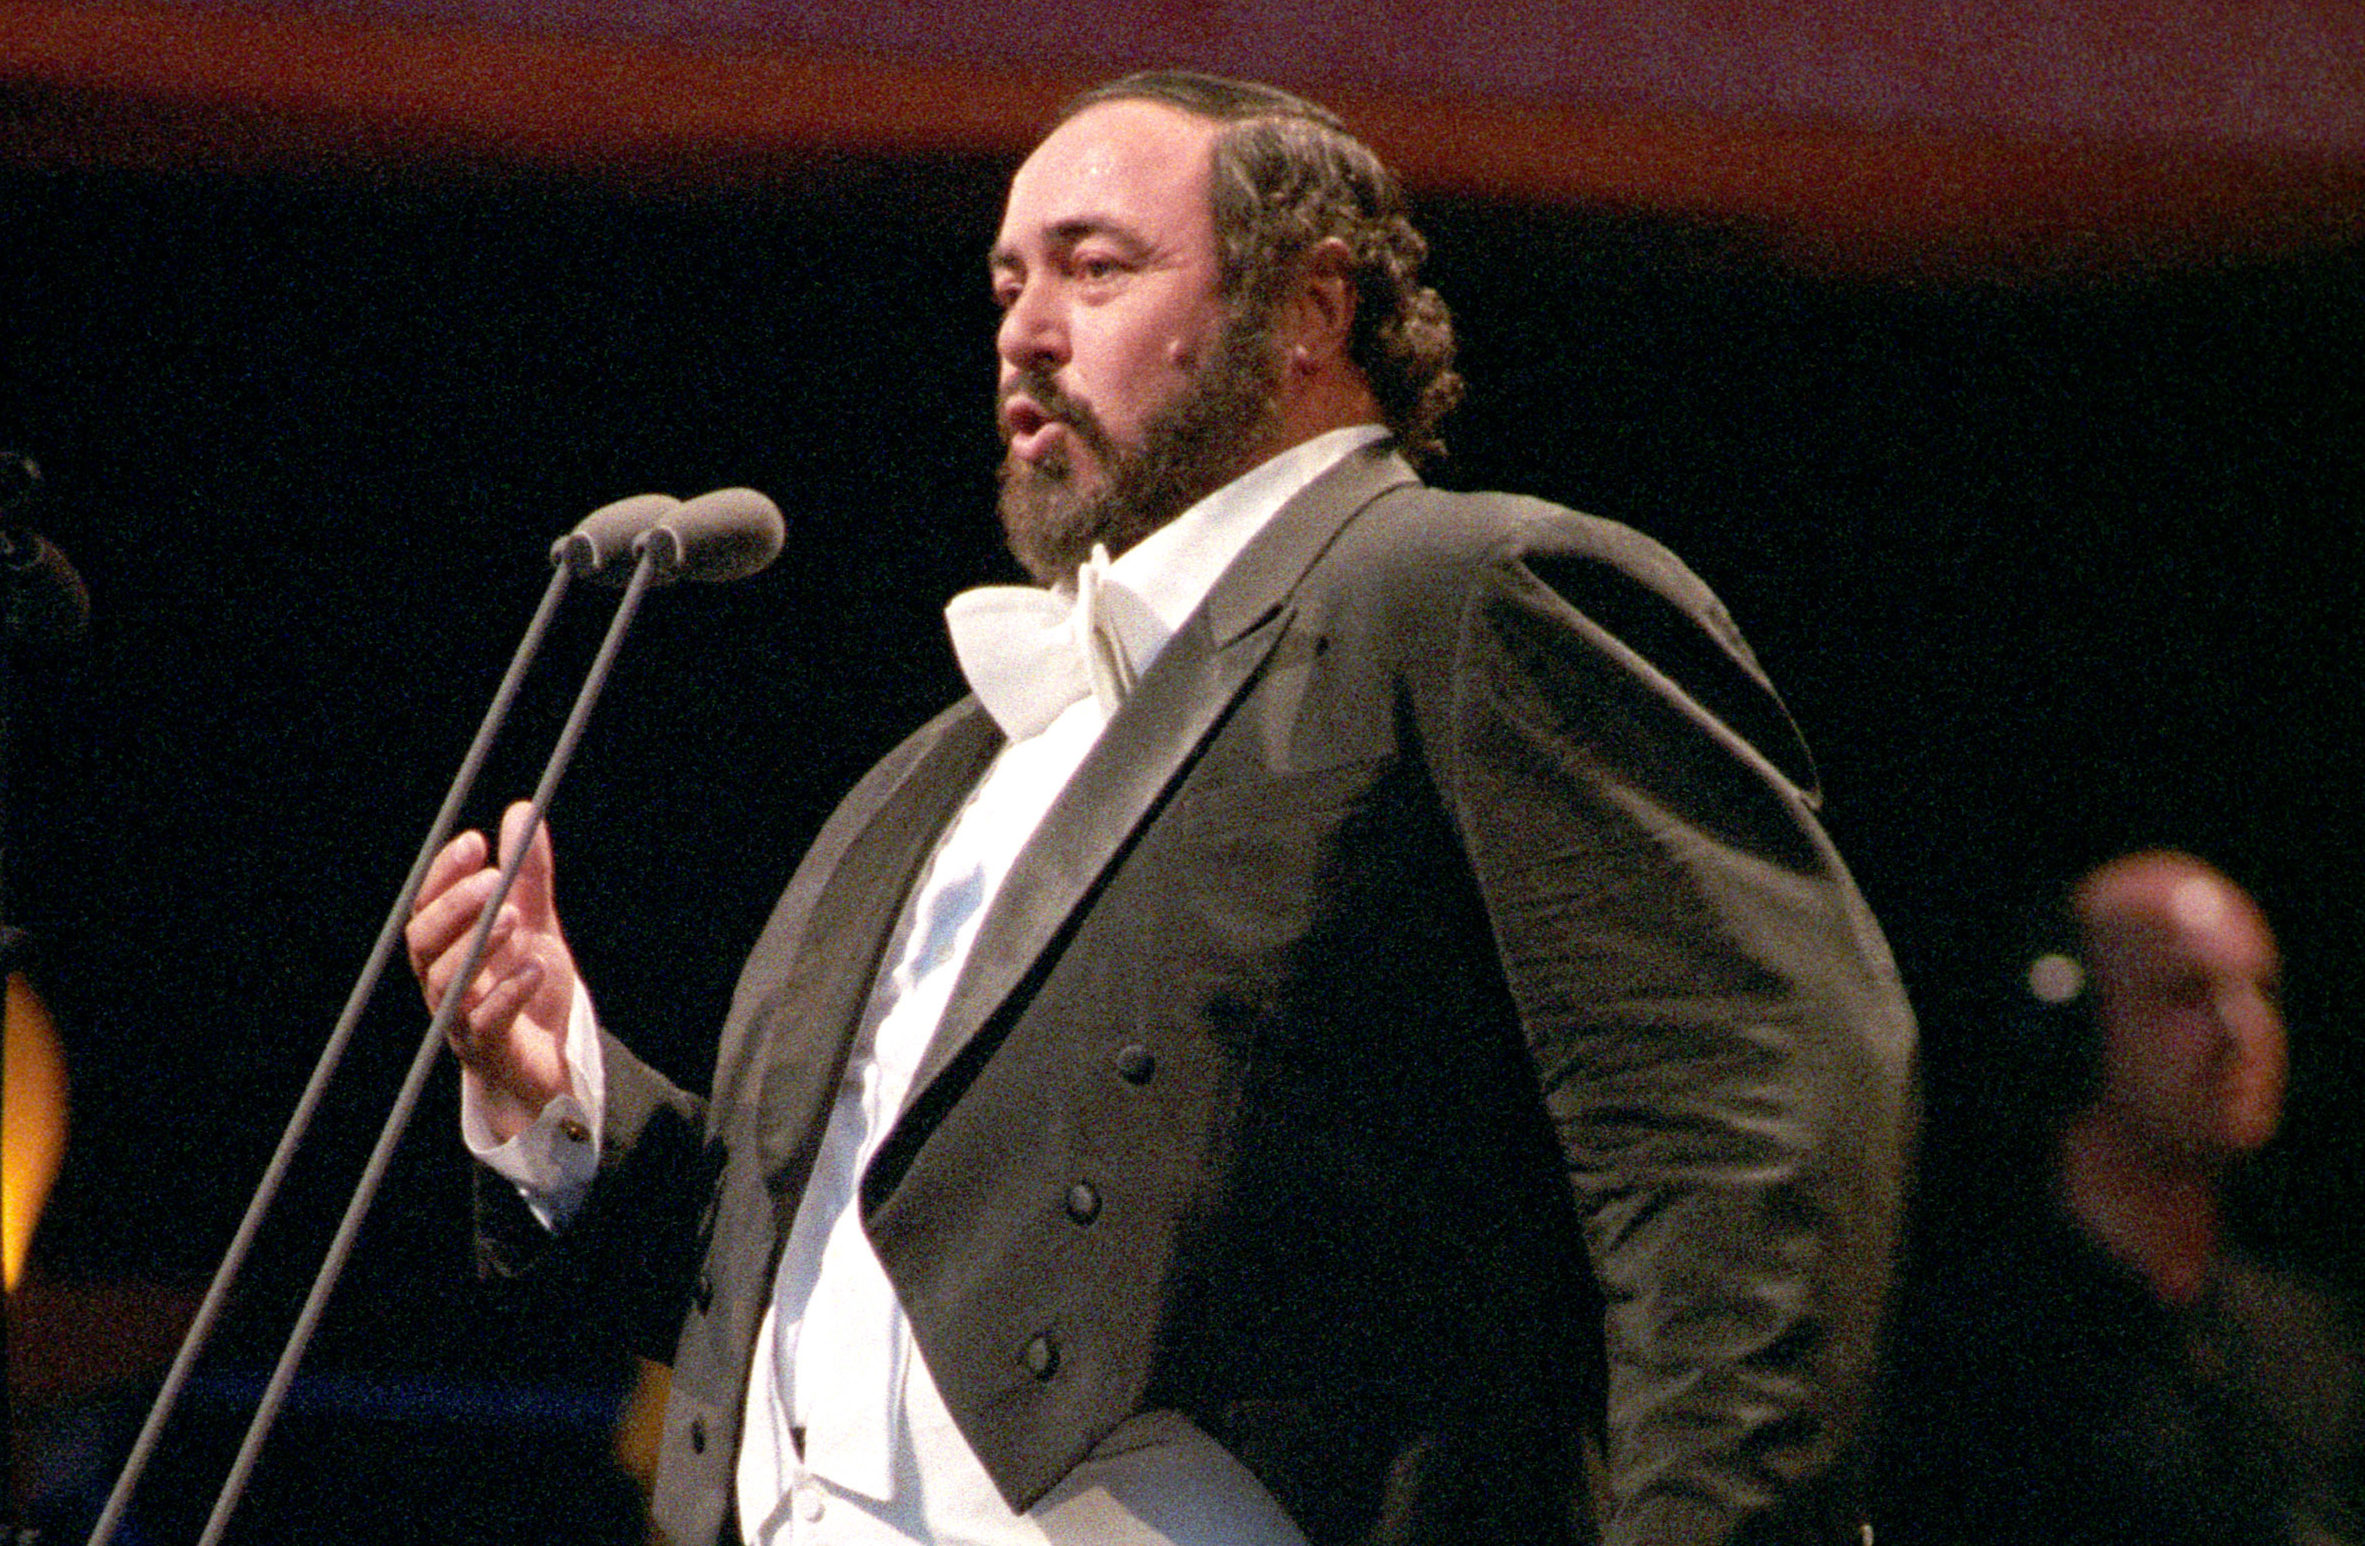 Italian opera singer Luciano Pavarotti